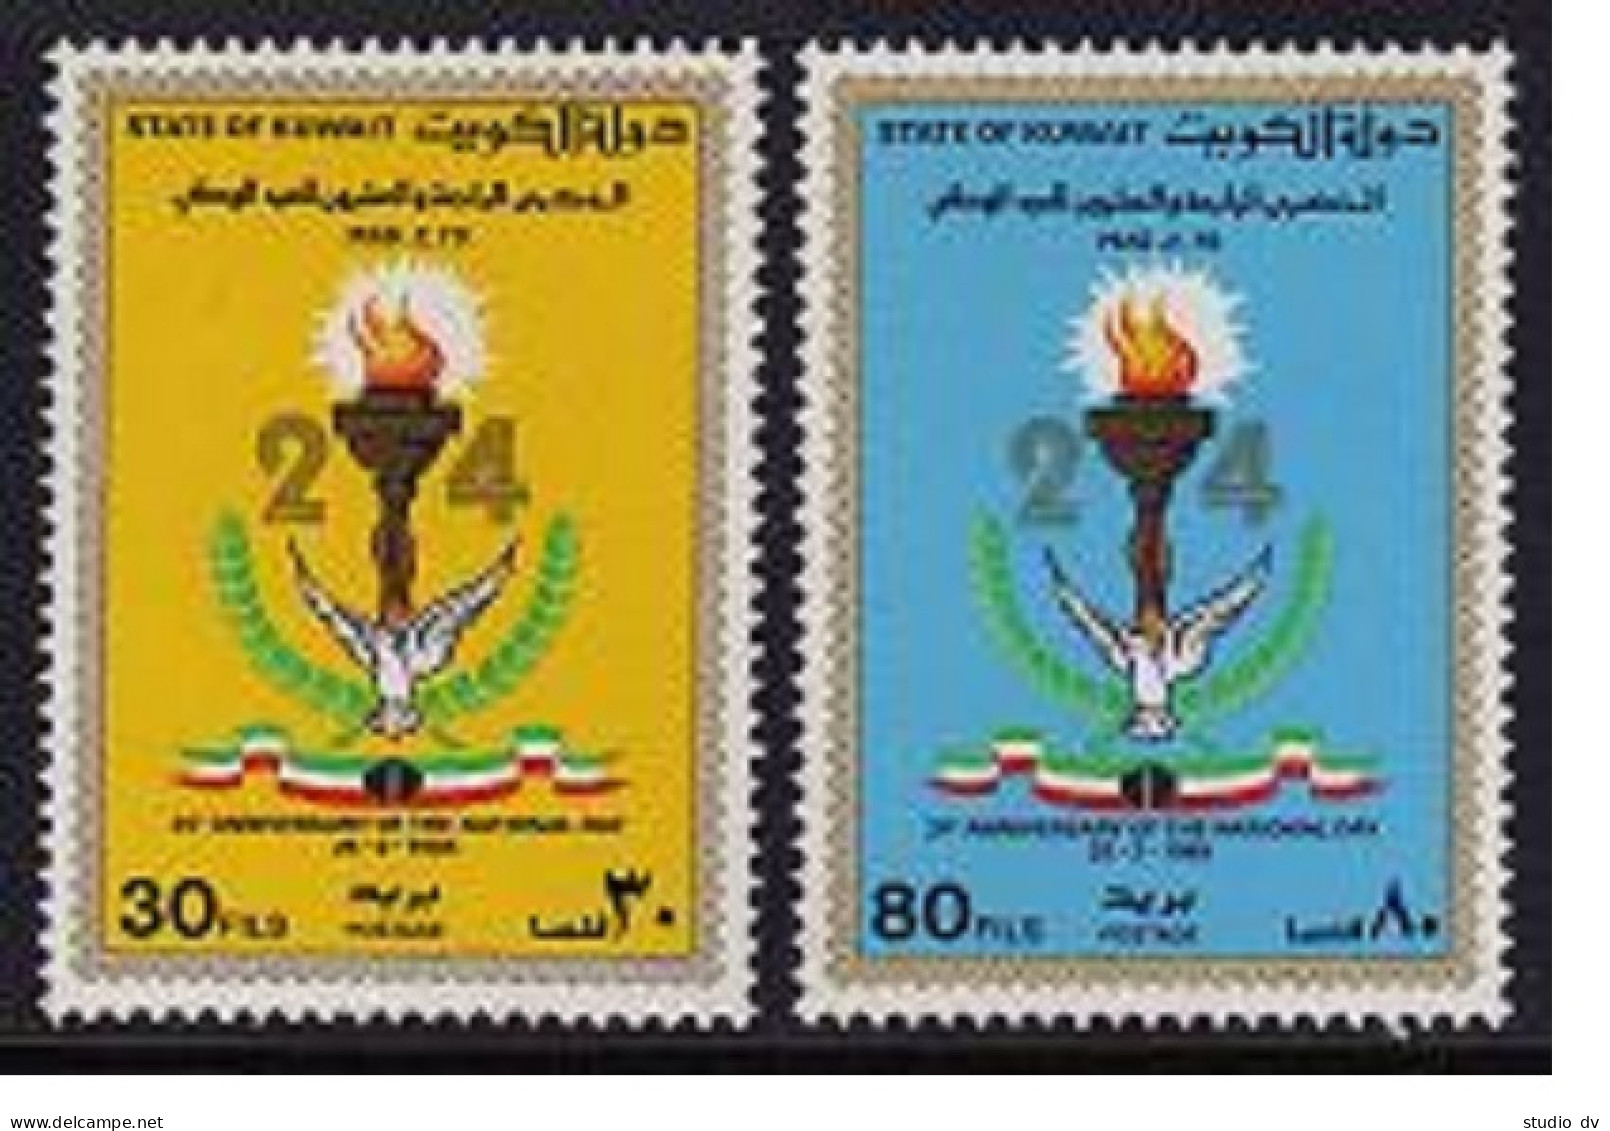 Kuwait 981-982, MNH. Mi 1067-1068. 24th National Day, 1985. Bird, Torch, Flag. - Kuwait